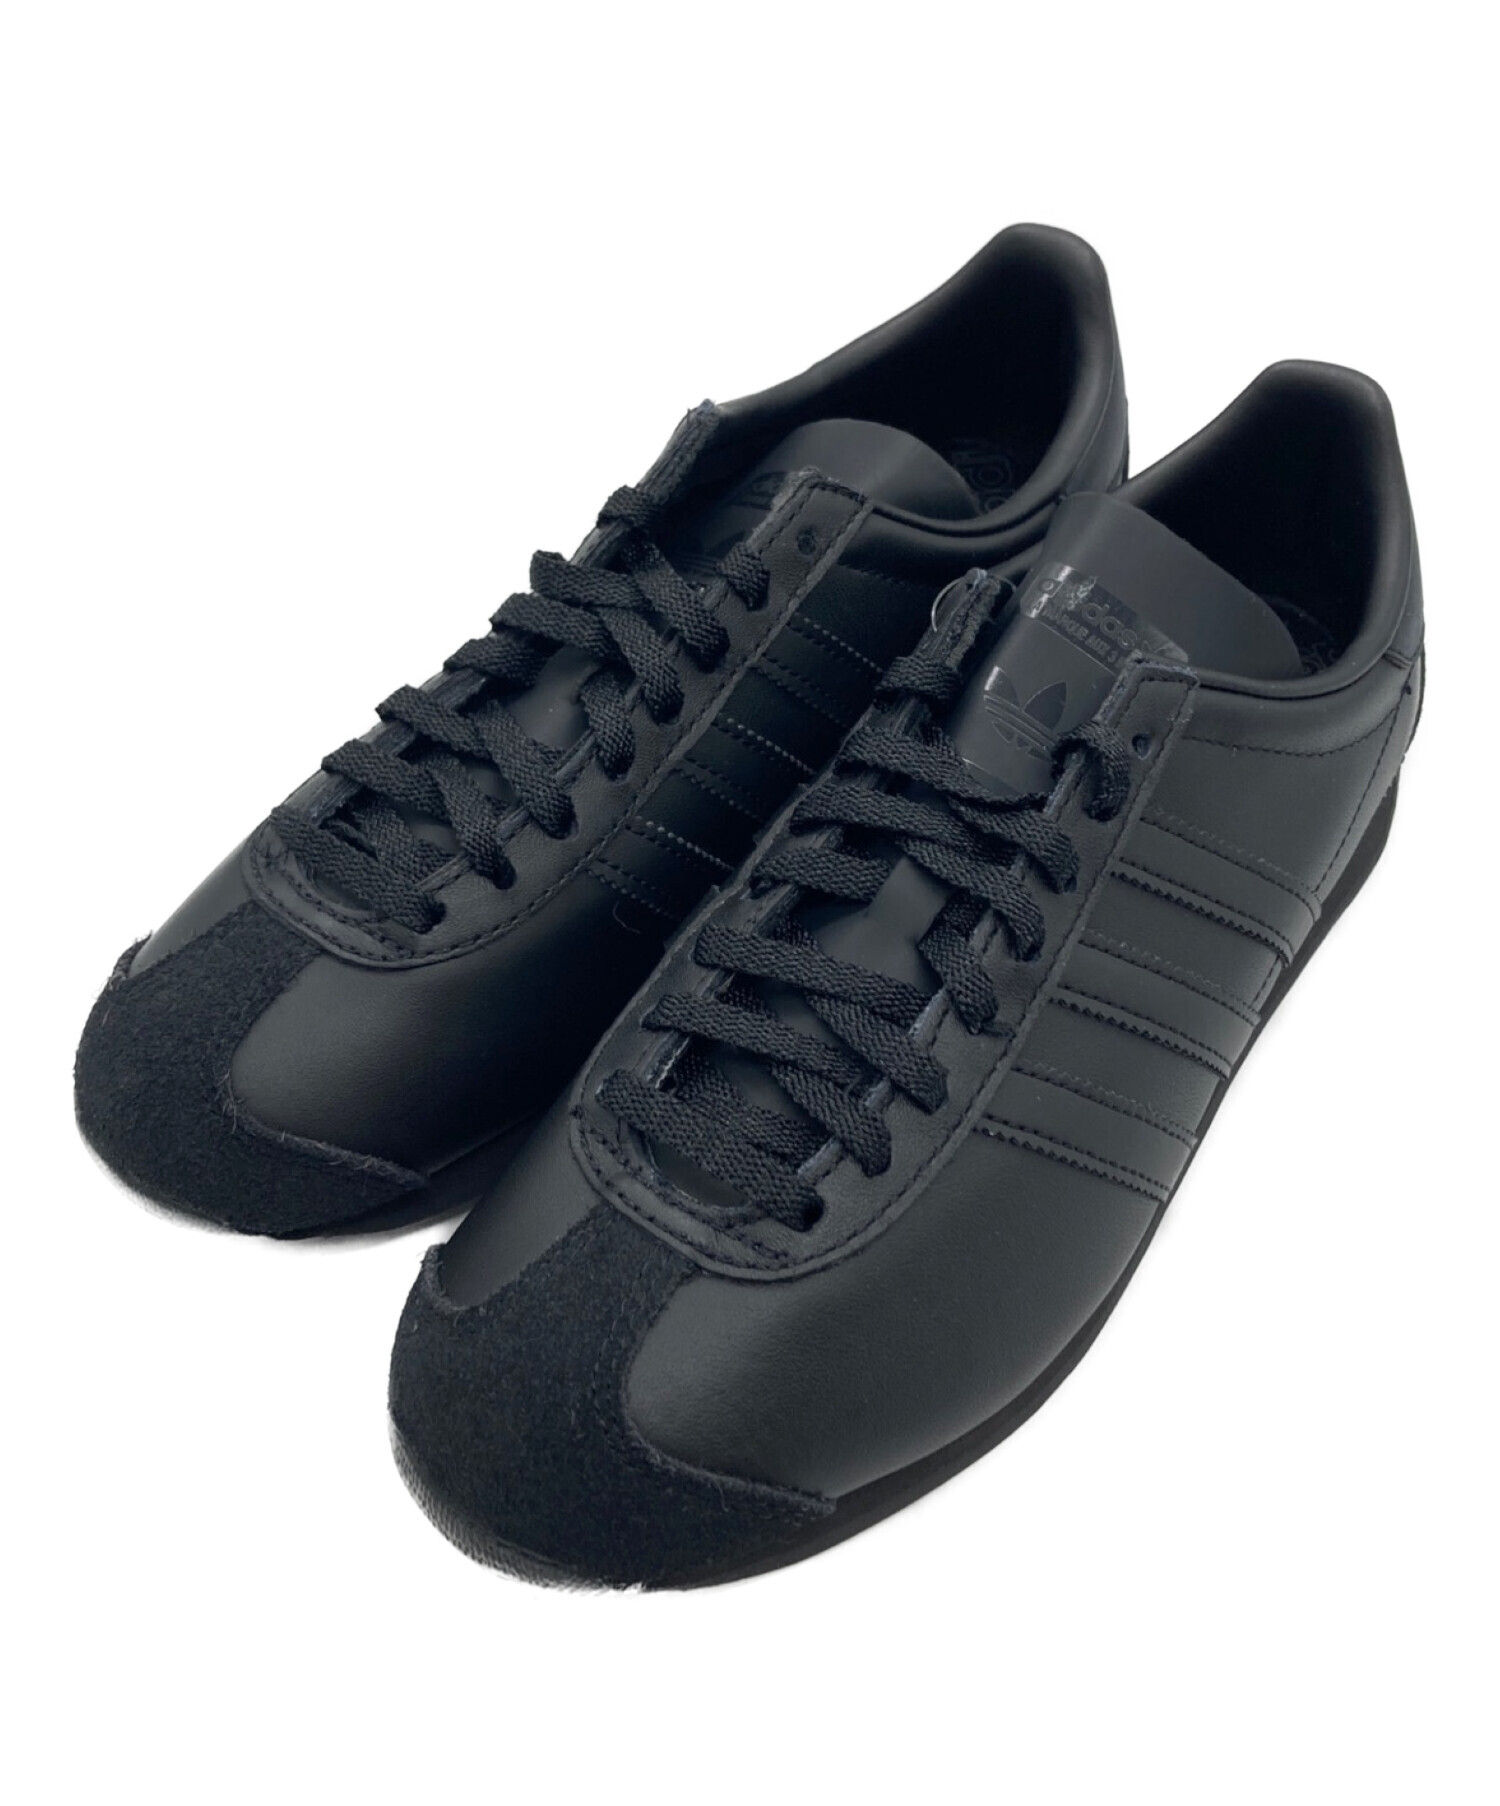 adidas (アディダス) カントリー OG COUNTRY OG ブラック サイズ:US7 UK6 1/2 未使用品